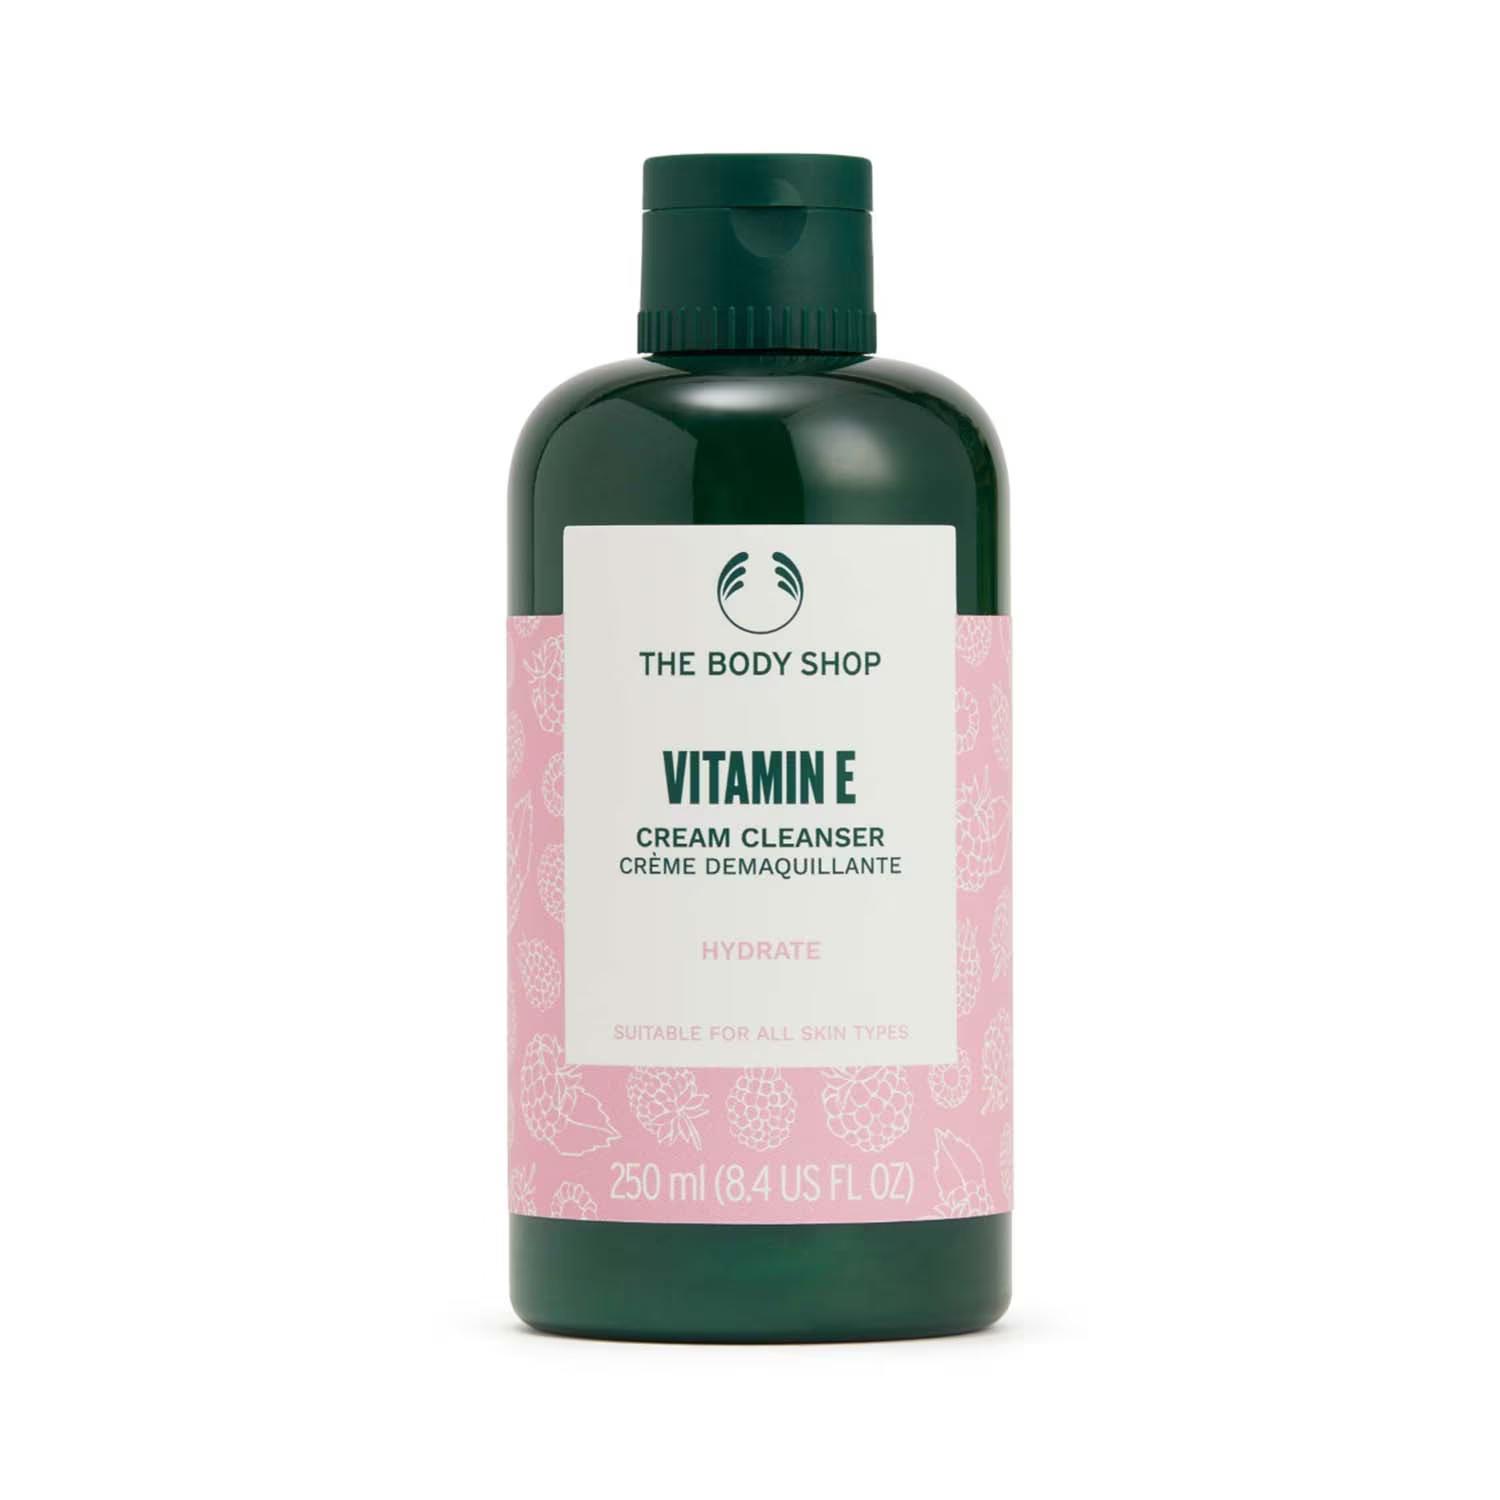 The Body Shop | The Body Shop Vitamin E Cream Cleanser (250ml)